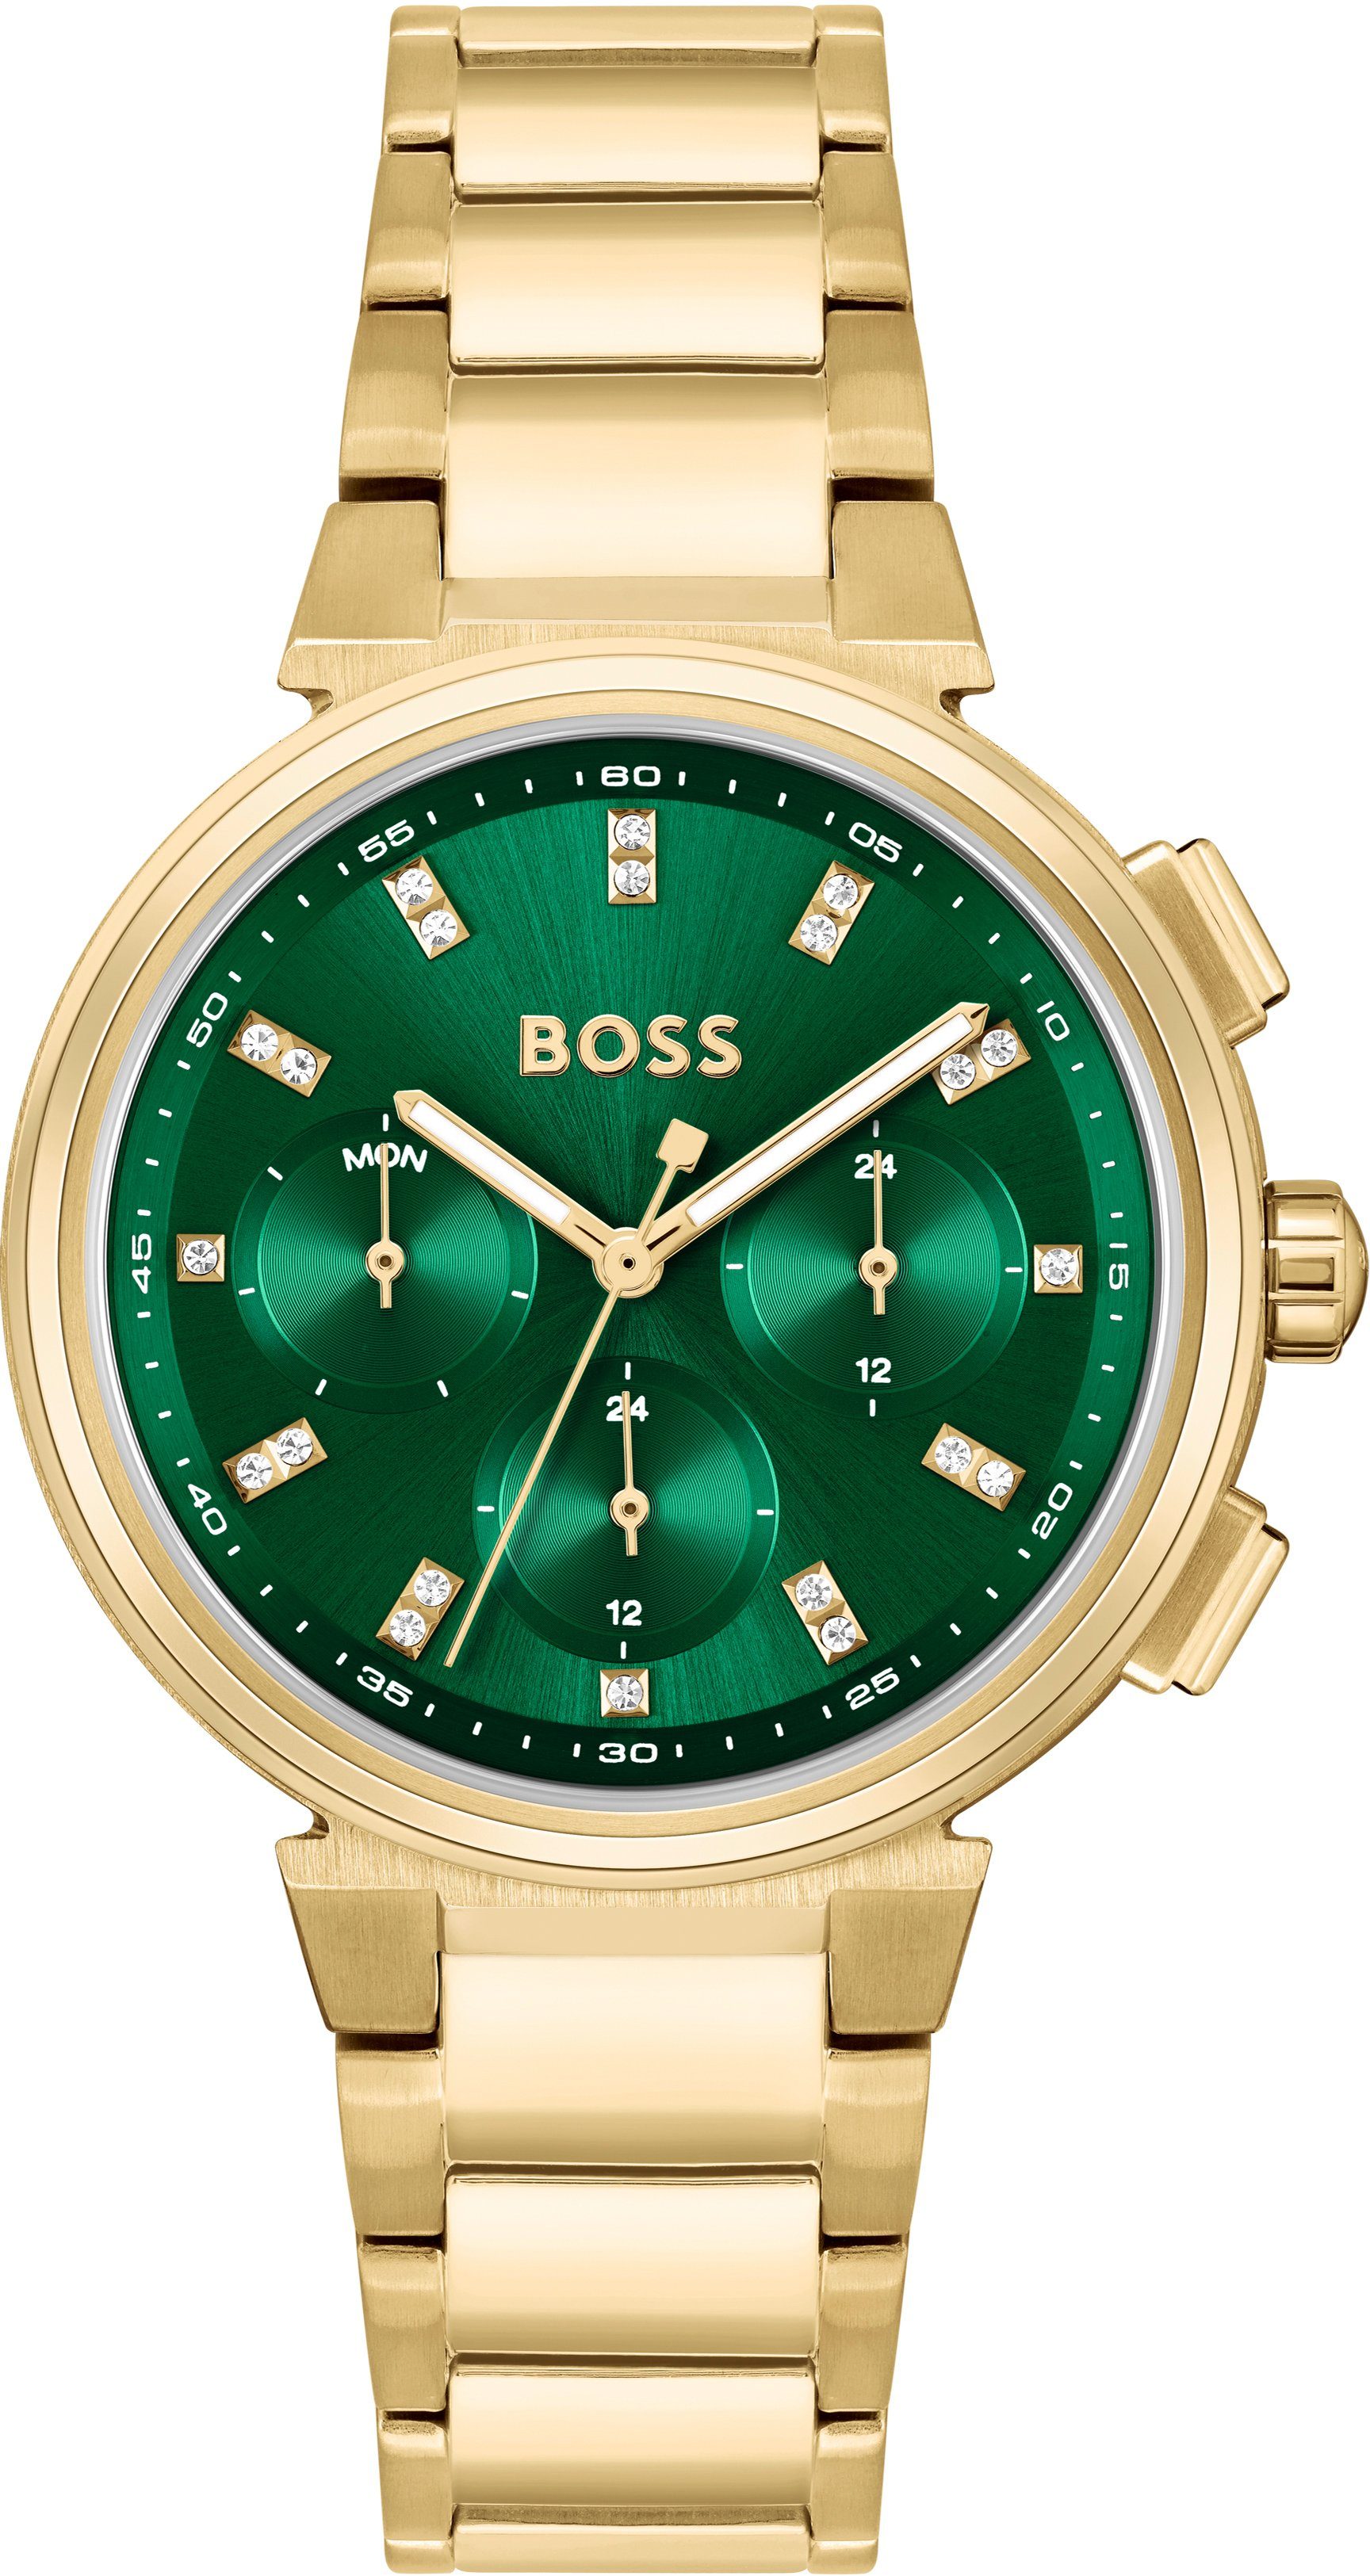 BOSS Multifunktionsuhr ONE, 1502679, Quarzuhr, Damenuhr, Armbanduhr, Glaskristalle, Datum